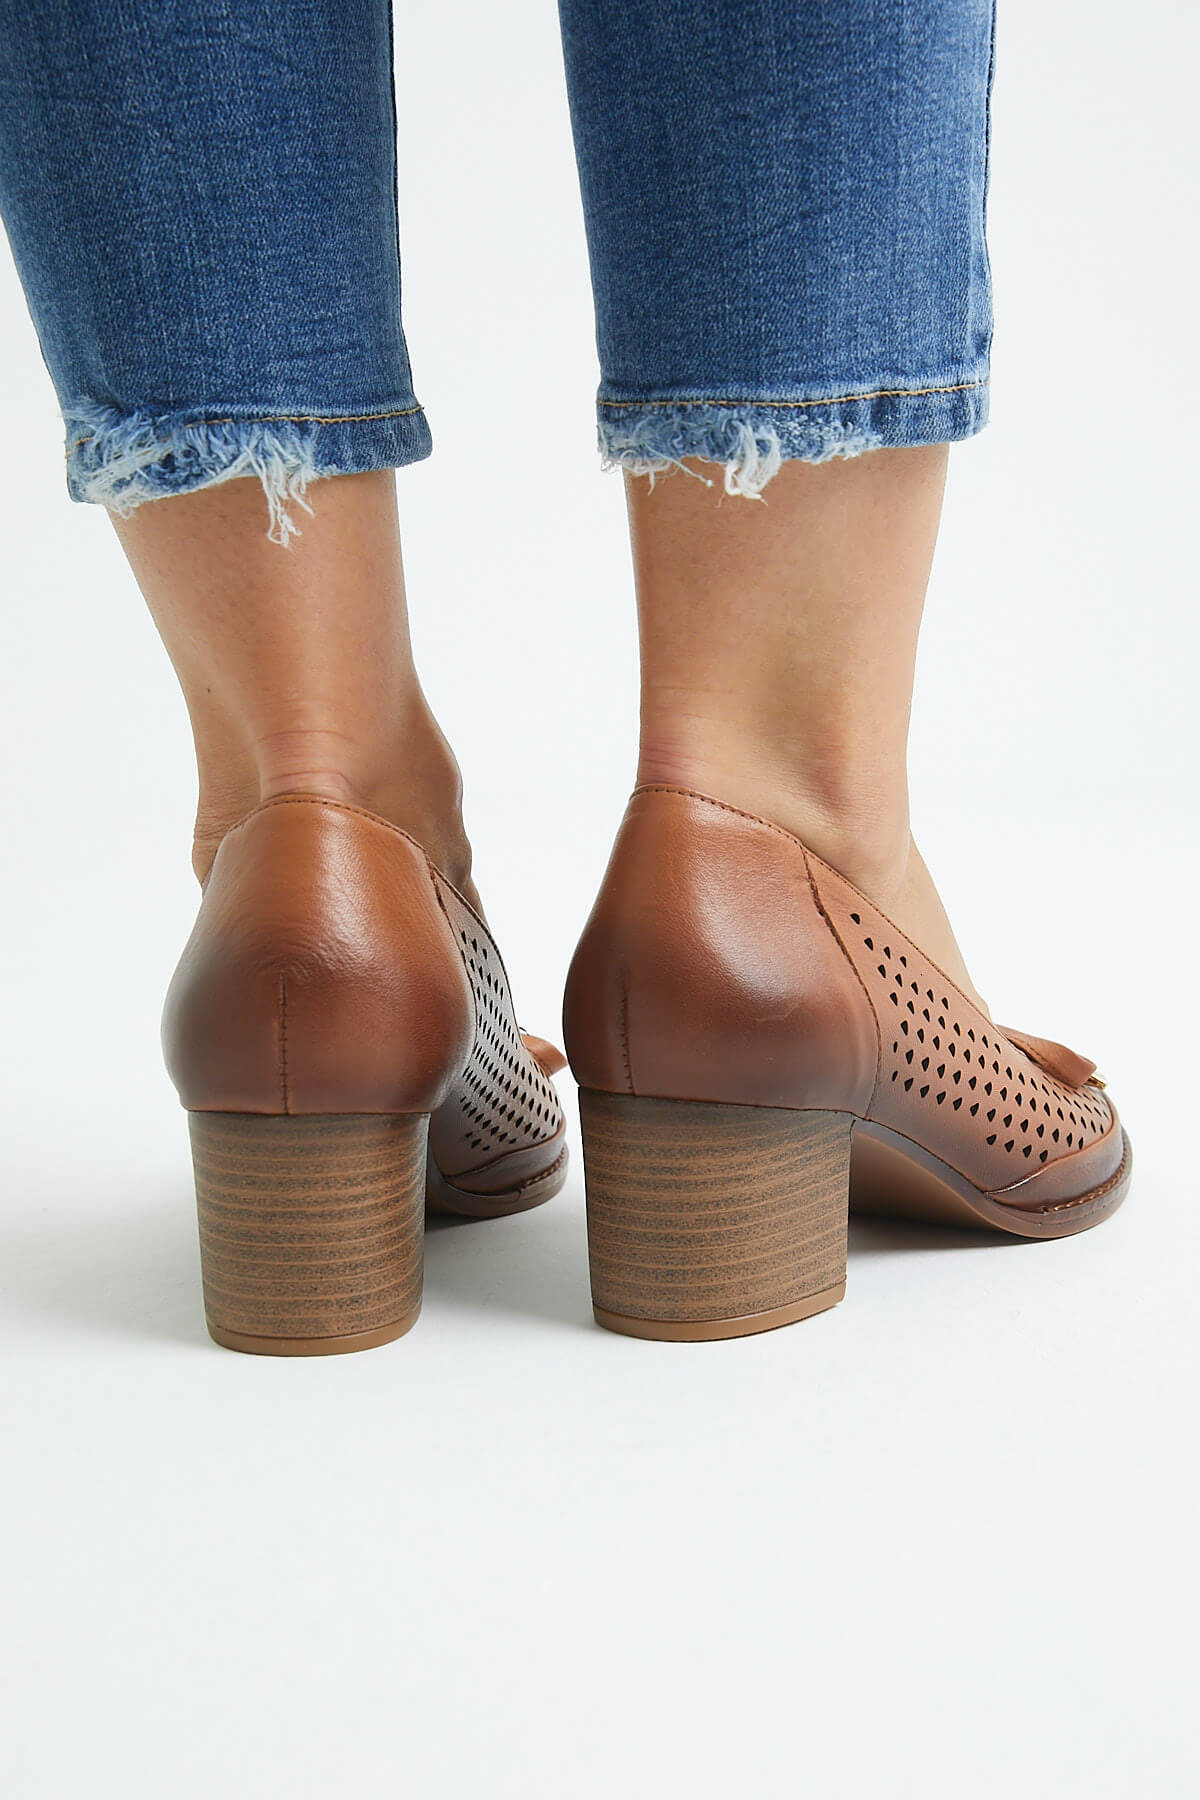 Kadın Topuklu Deri Ayakkabı Taba 2113301Y - Thumbnail